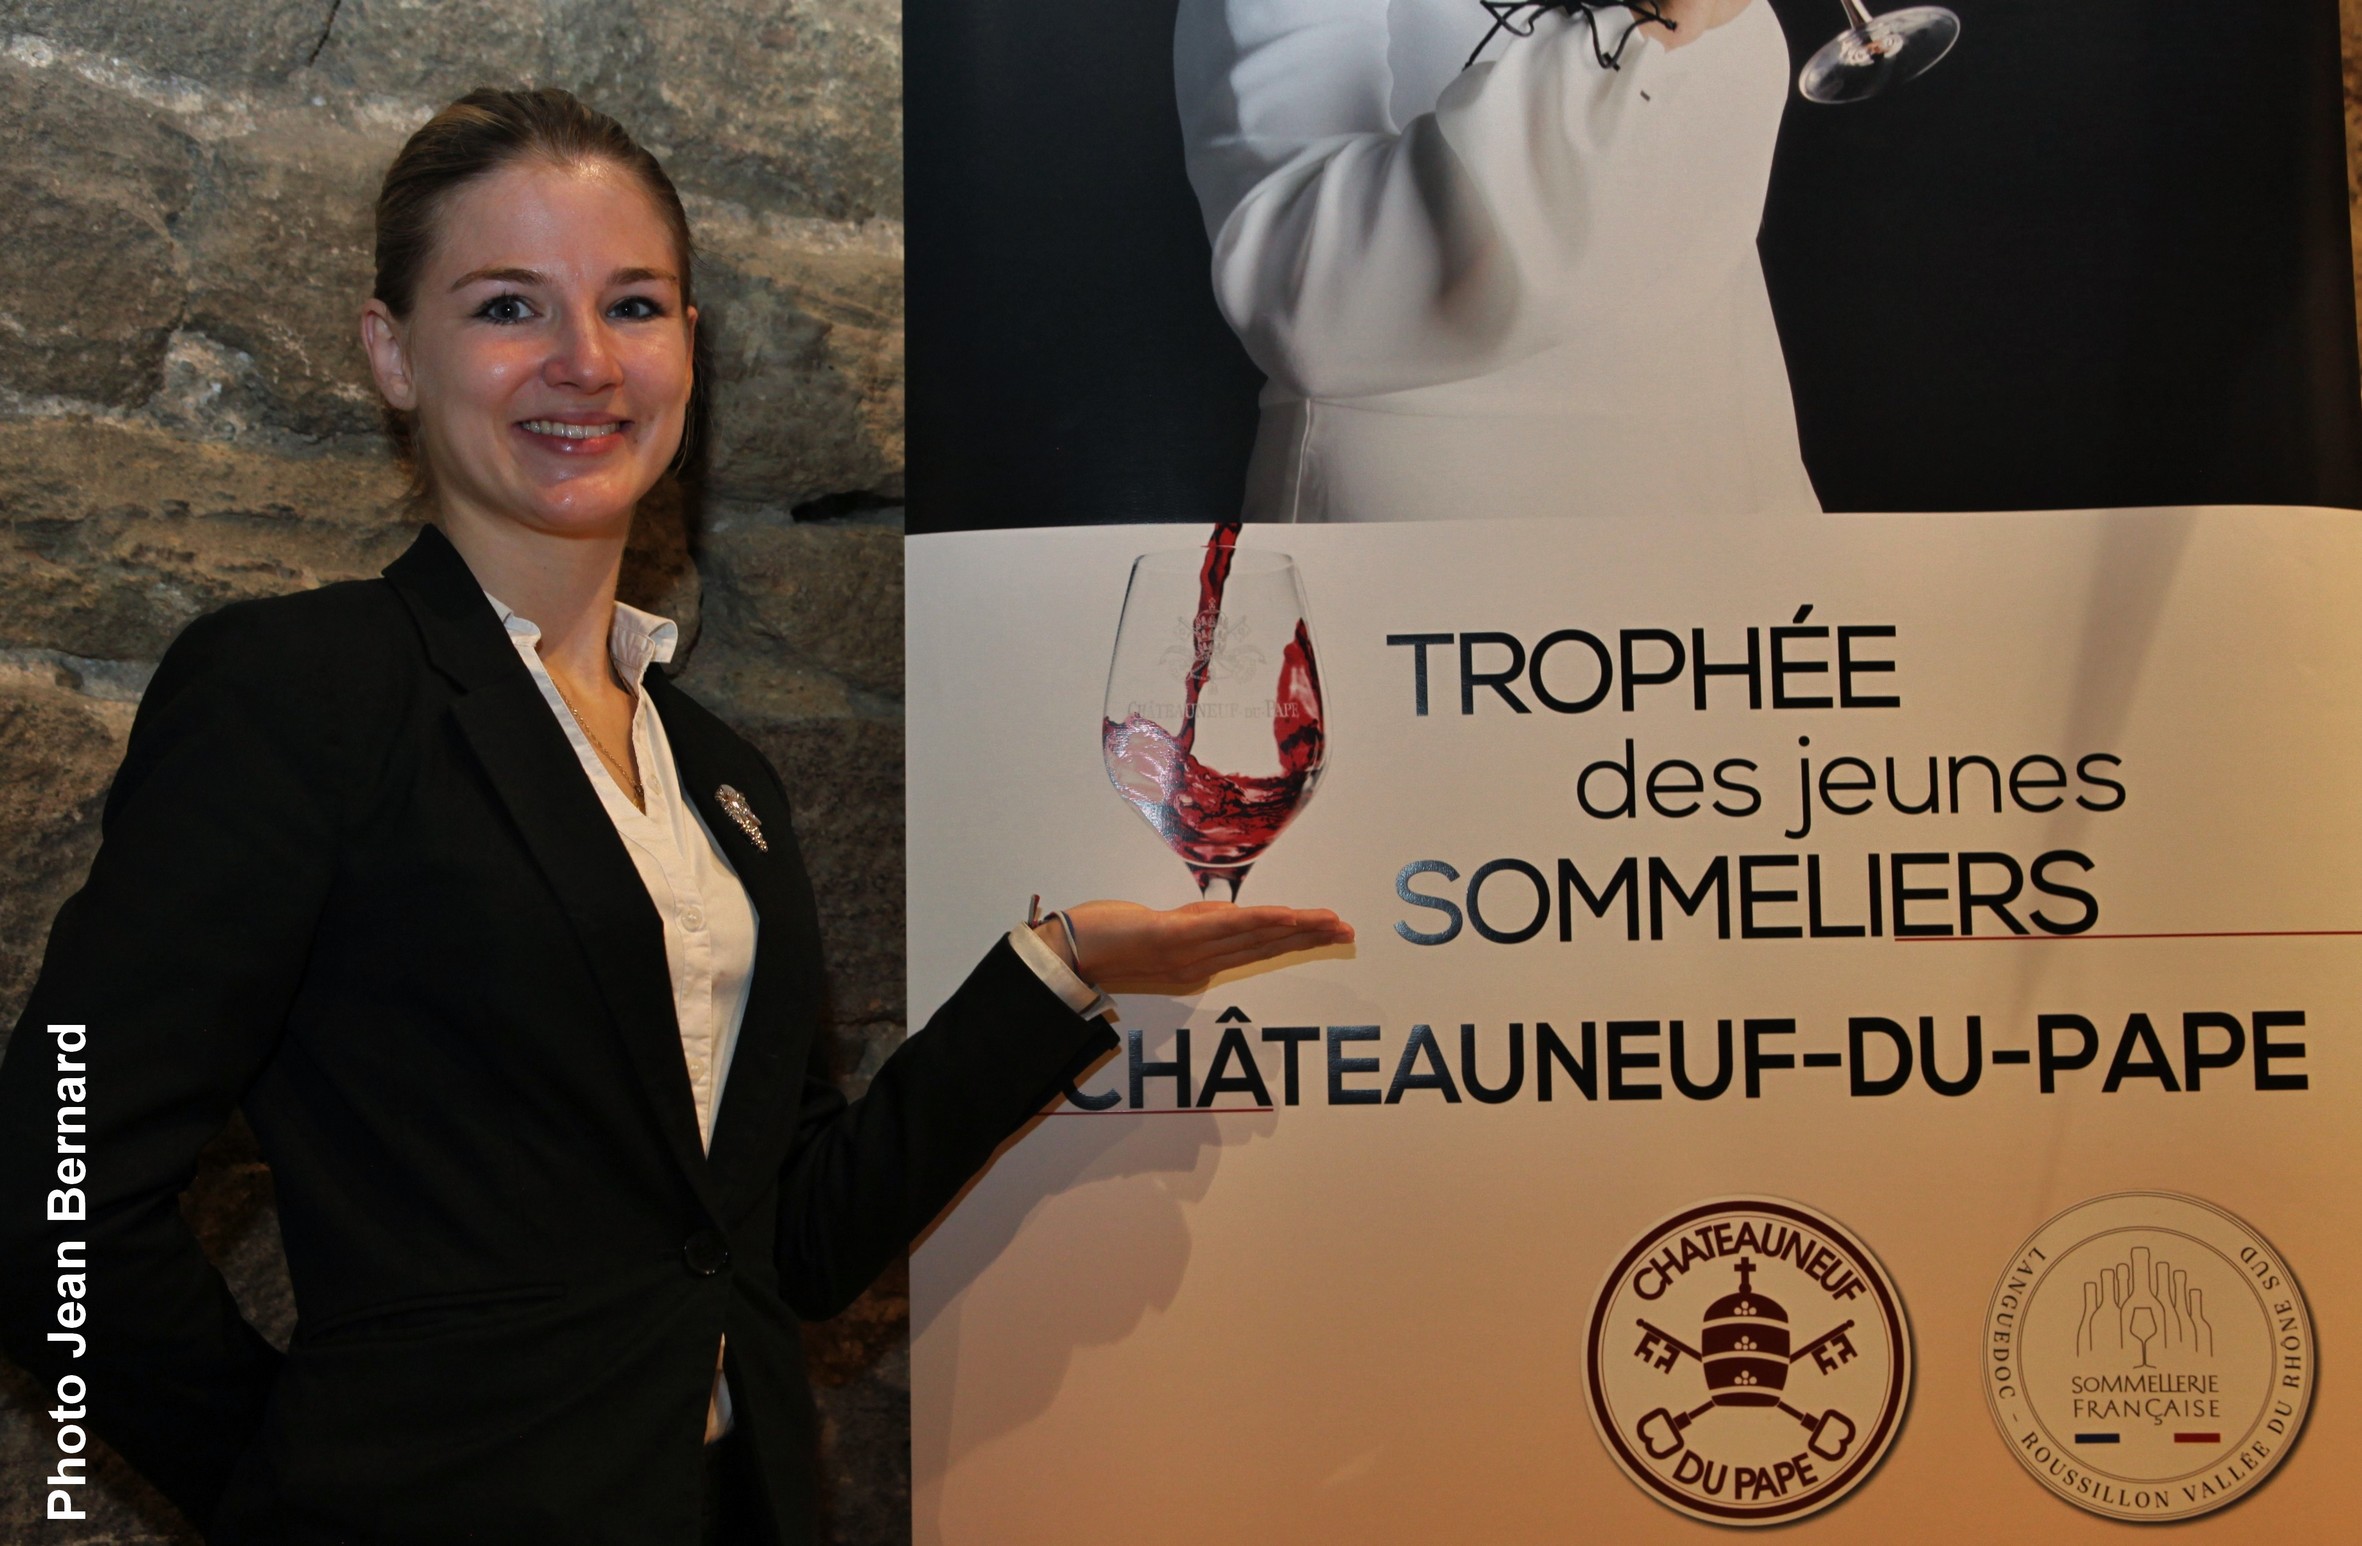 25 septembre 2021 : Audrey Brugière remporte le 2eme trophée des jeunes sommeliers Châteauneuf du Pape.